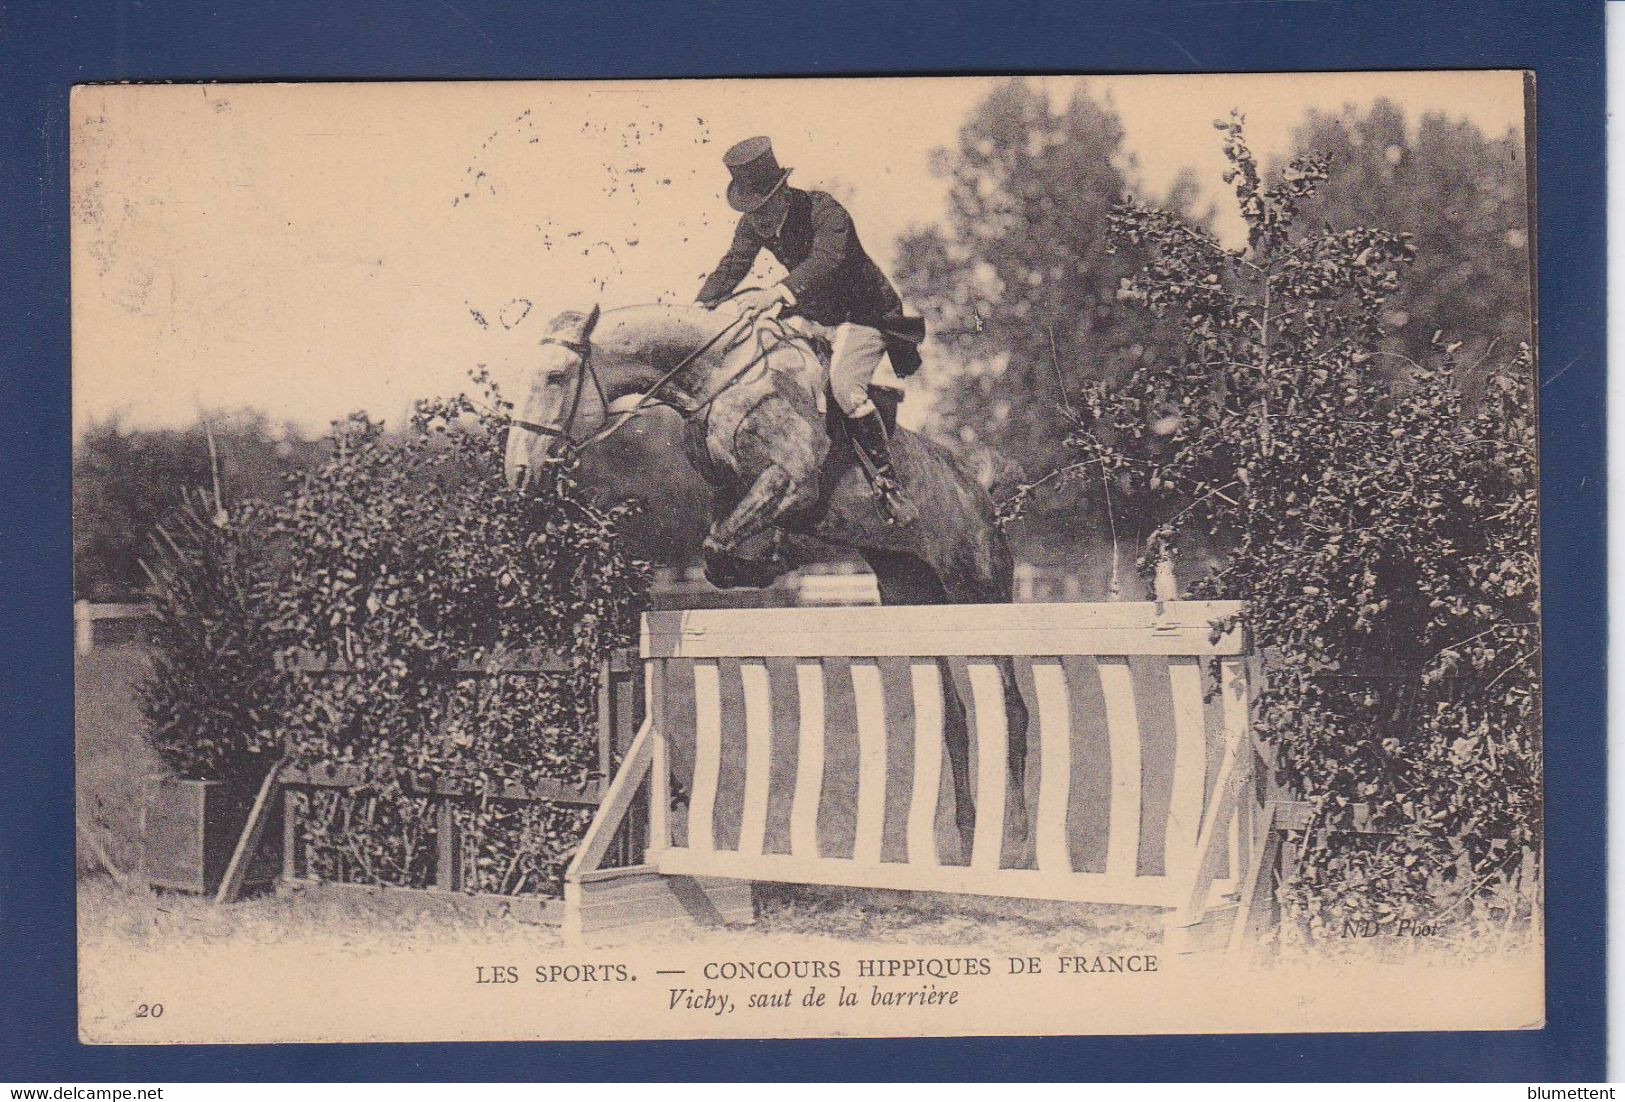 CPA Cheval Horse Circulé Concours Hippique Vichy - Paarden